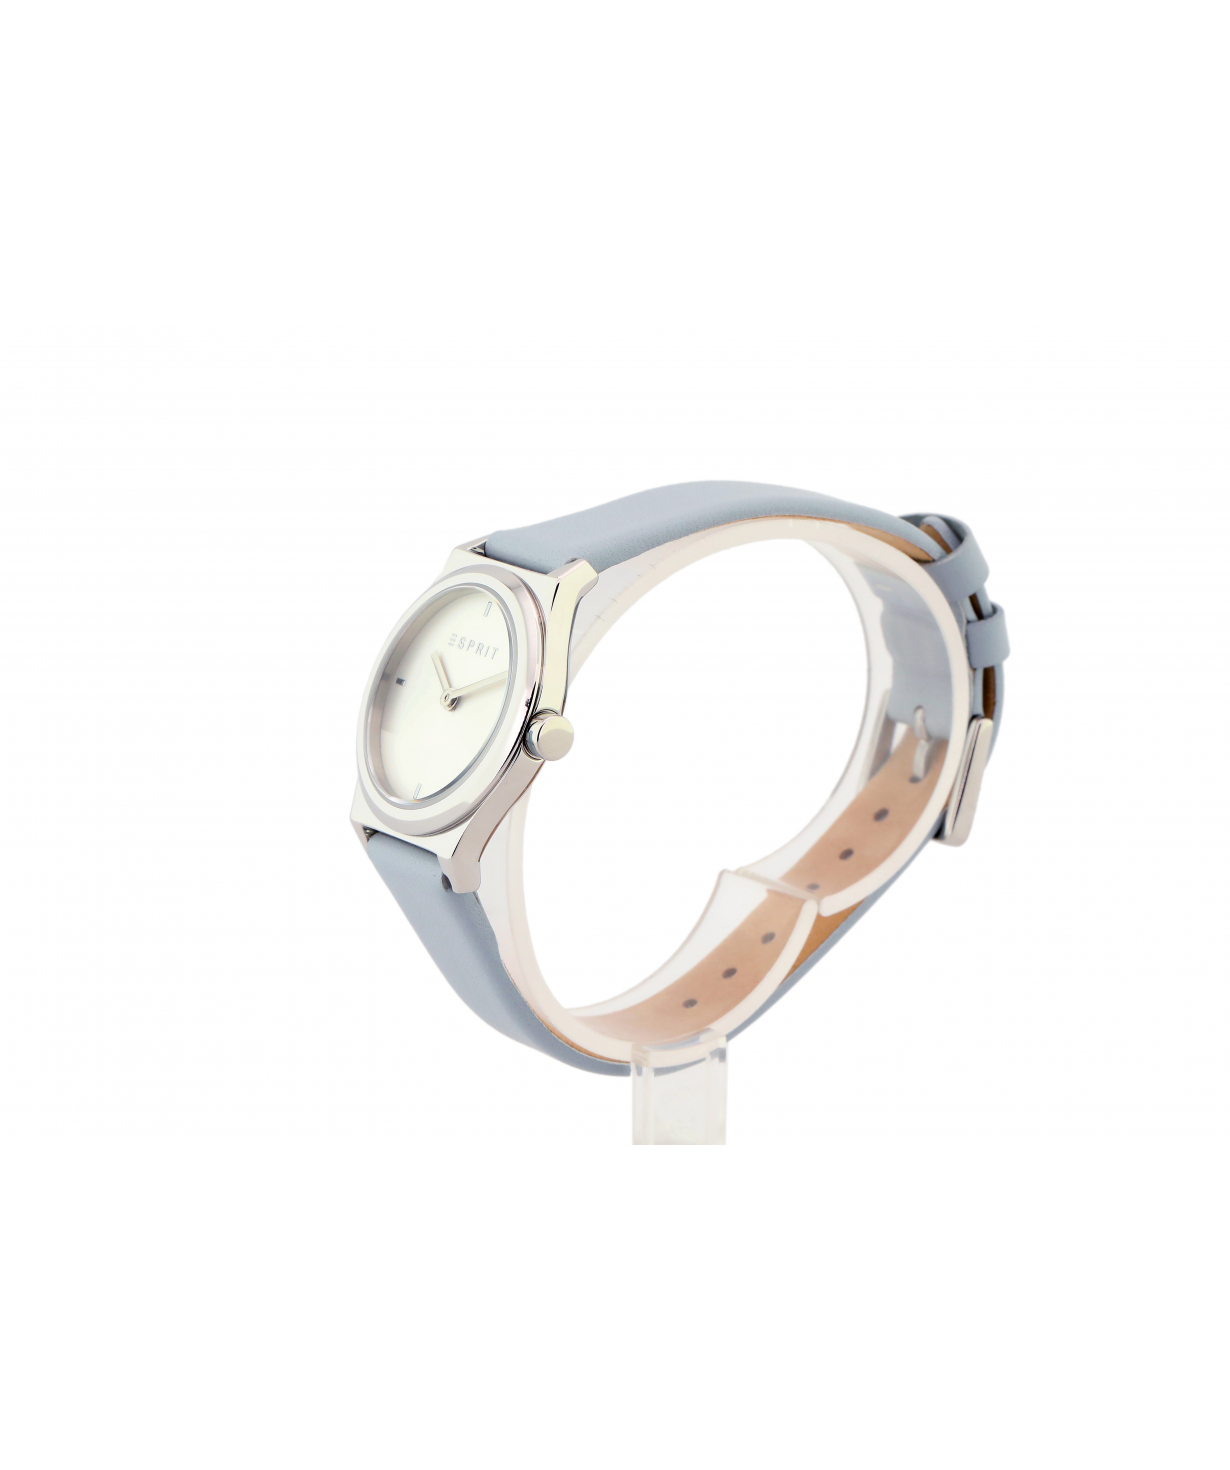 Ժամացույց  «Esprit» ձեռքի  ES1L090L0015